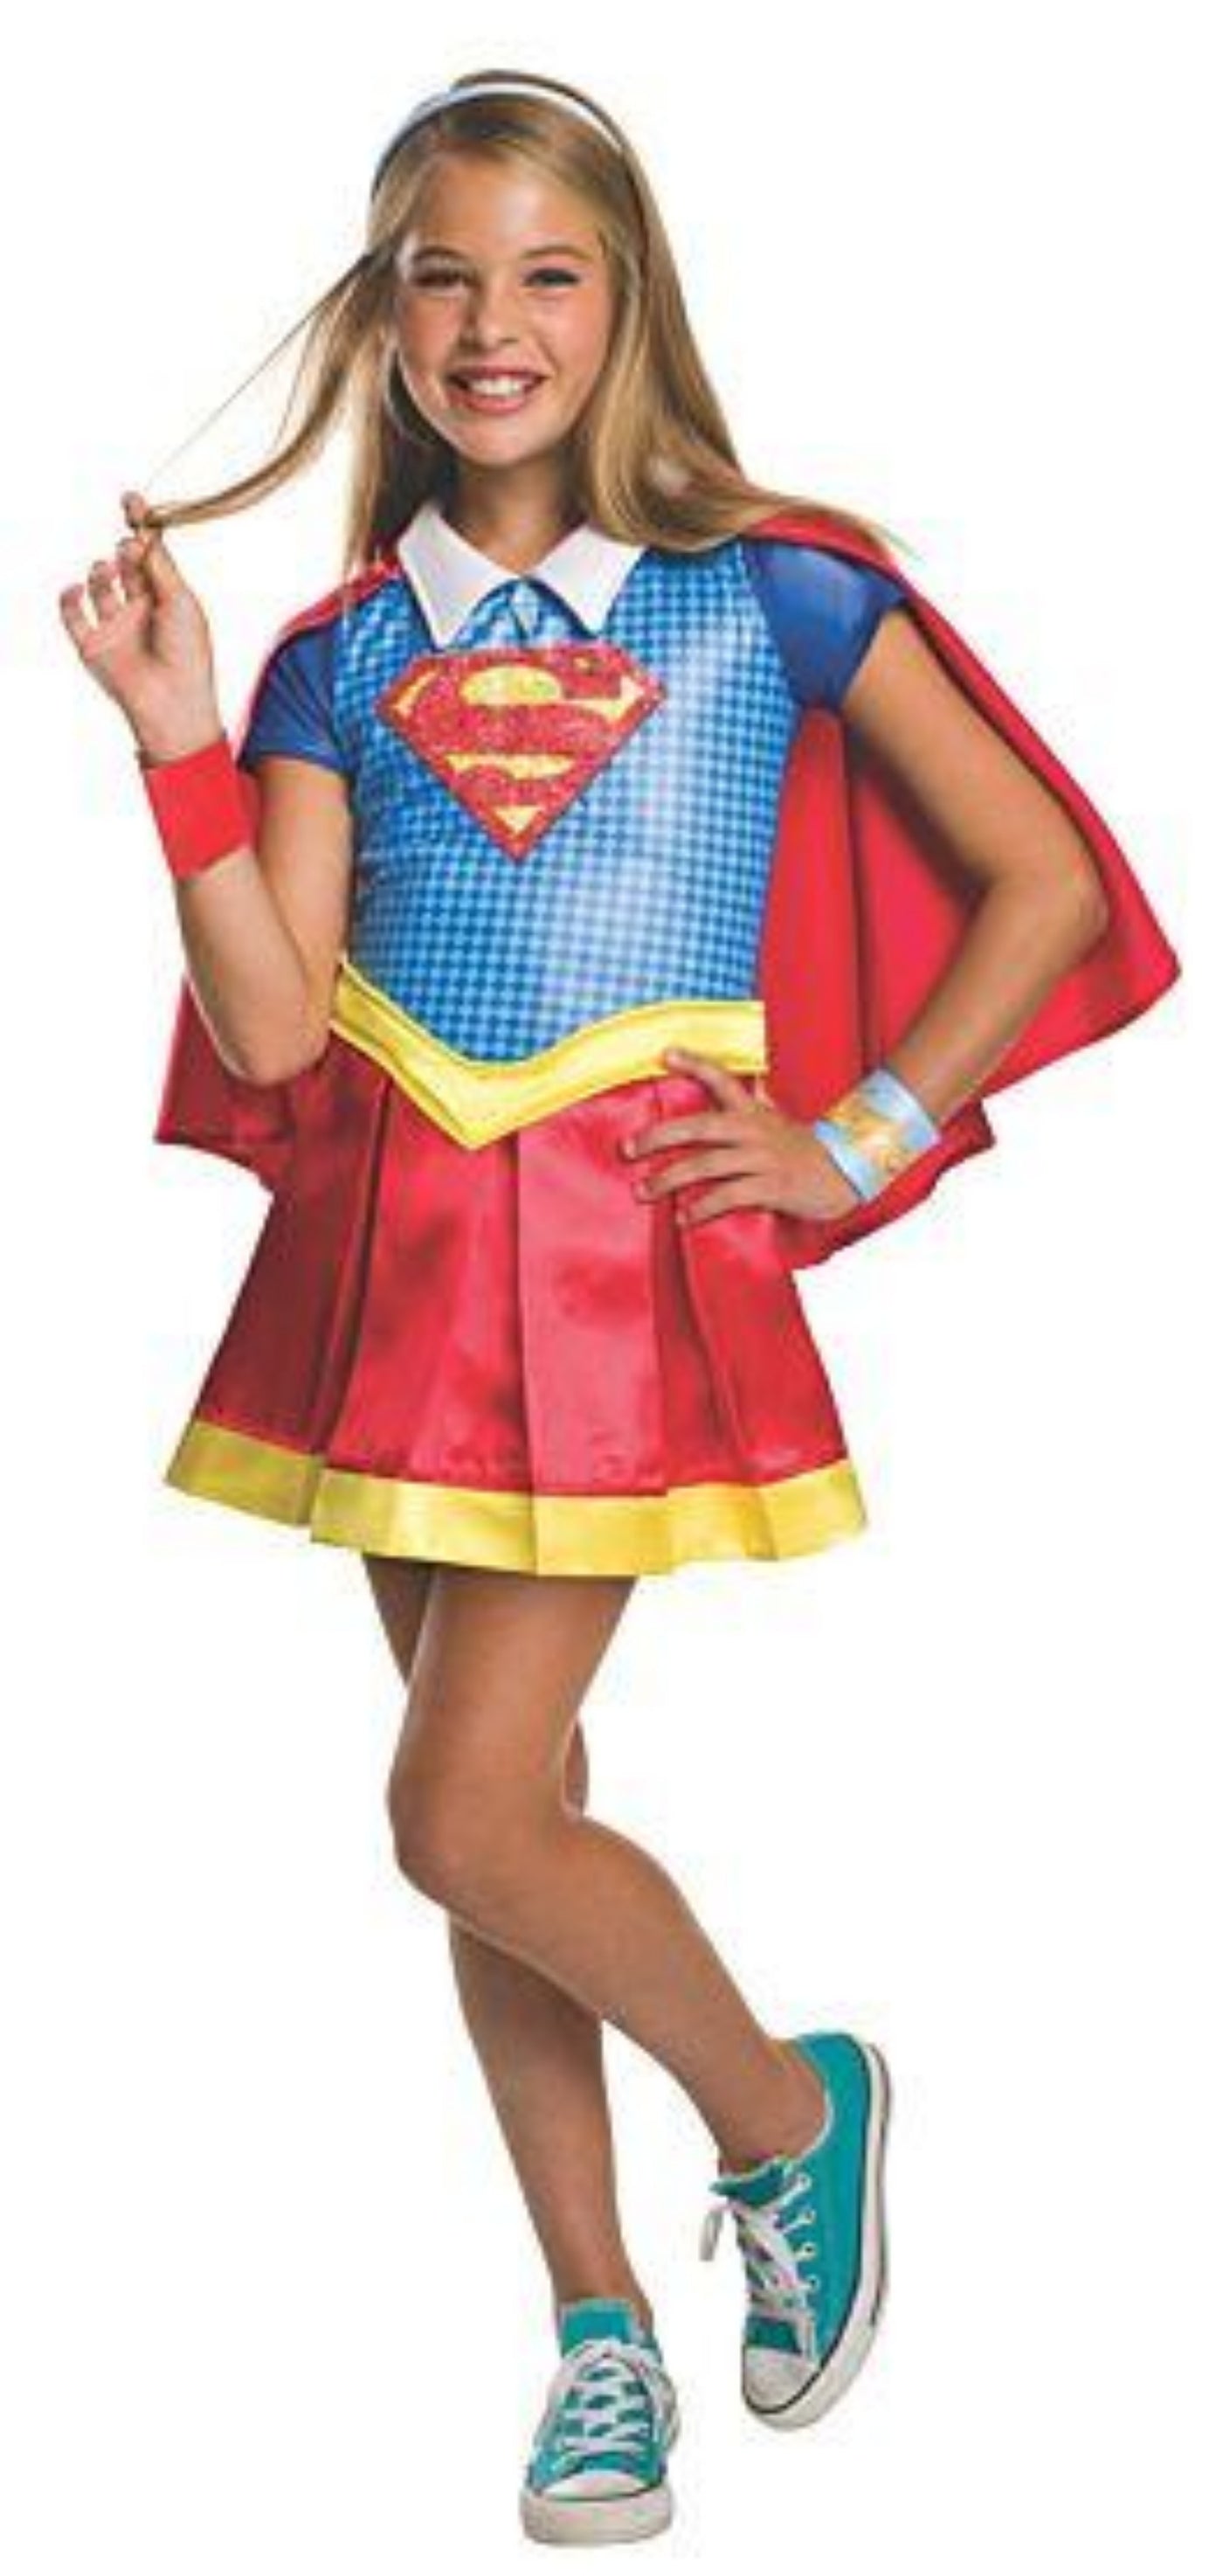 Deluxe Kids Supergirl Costume